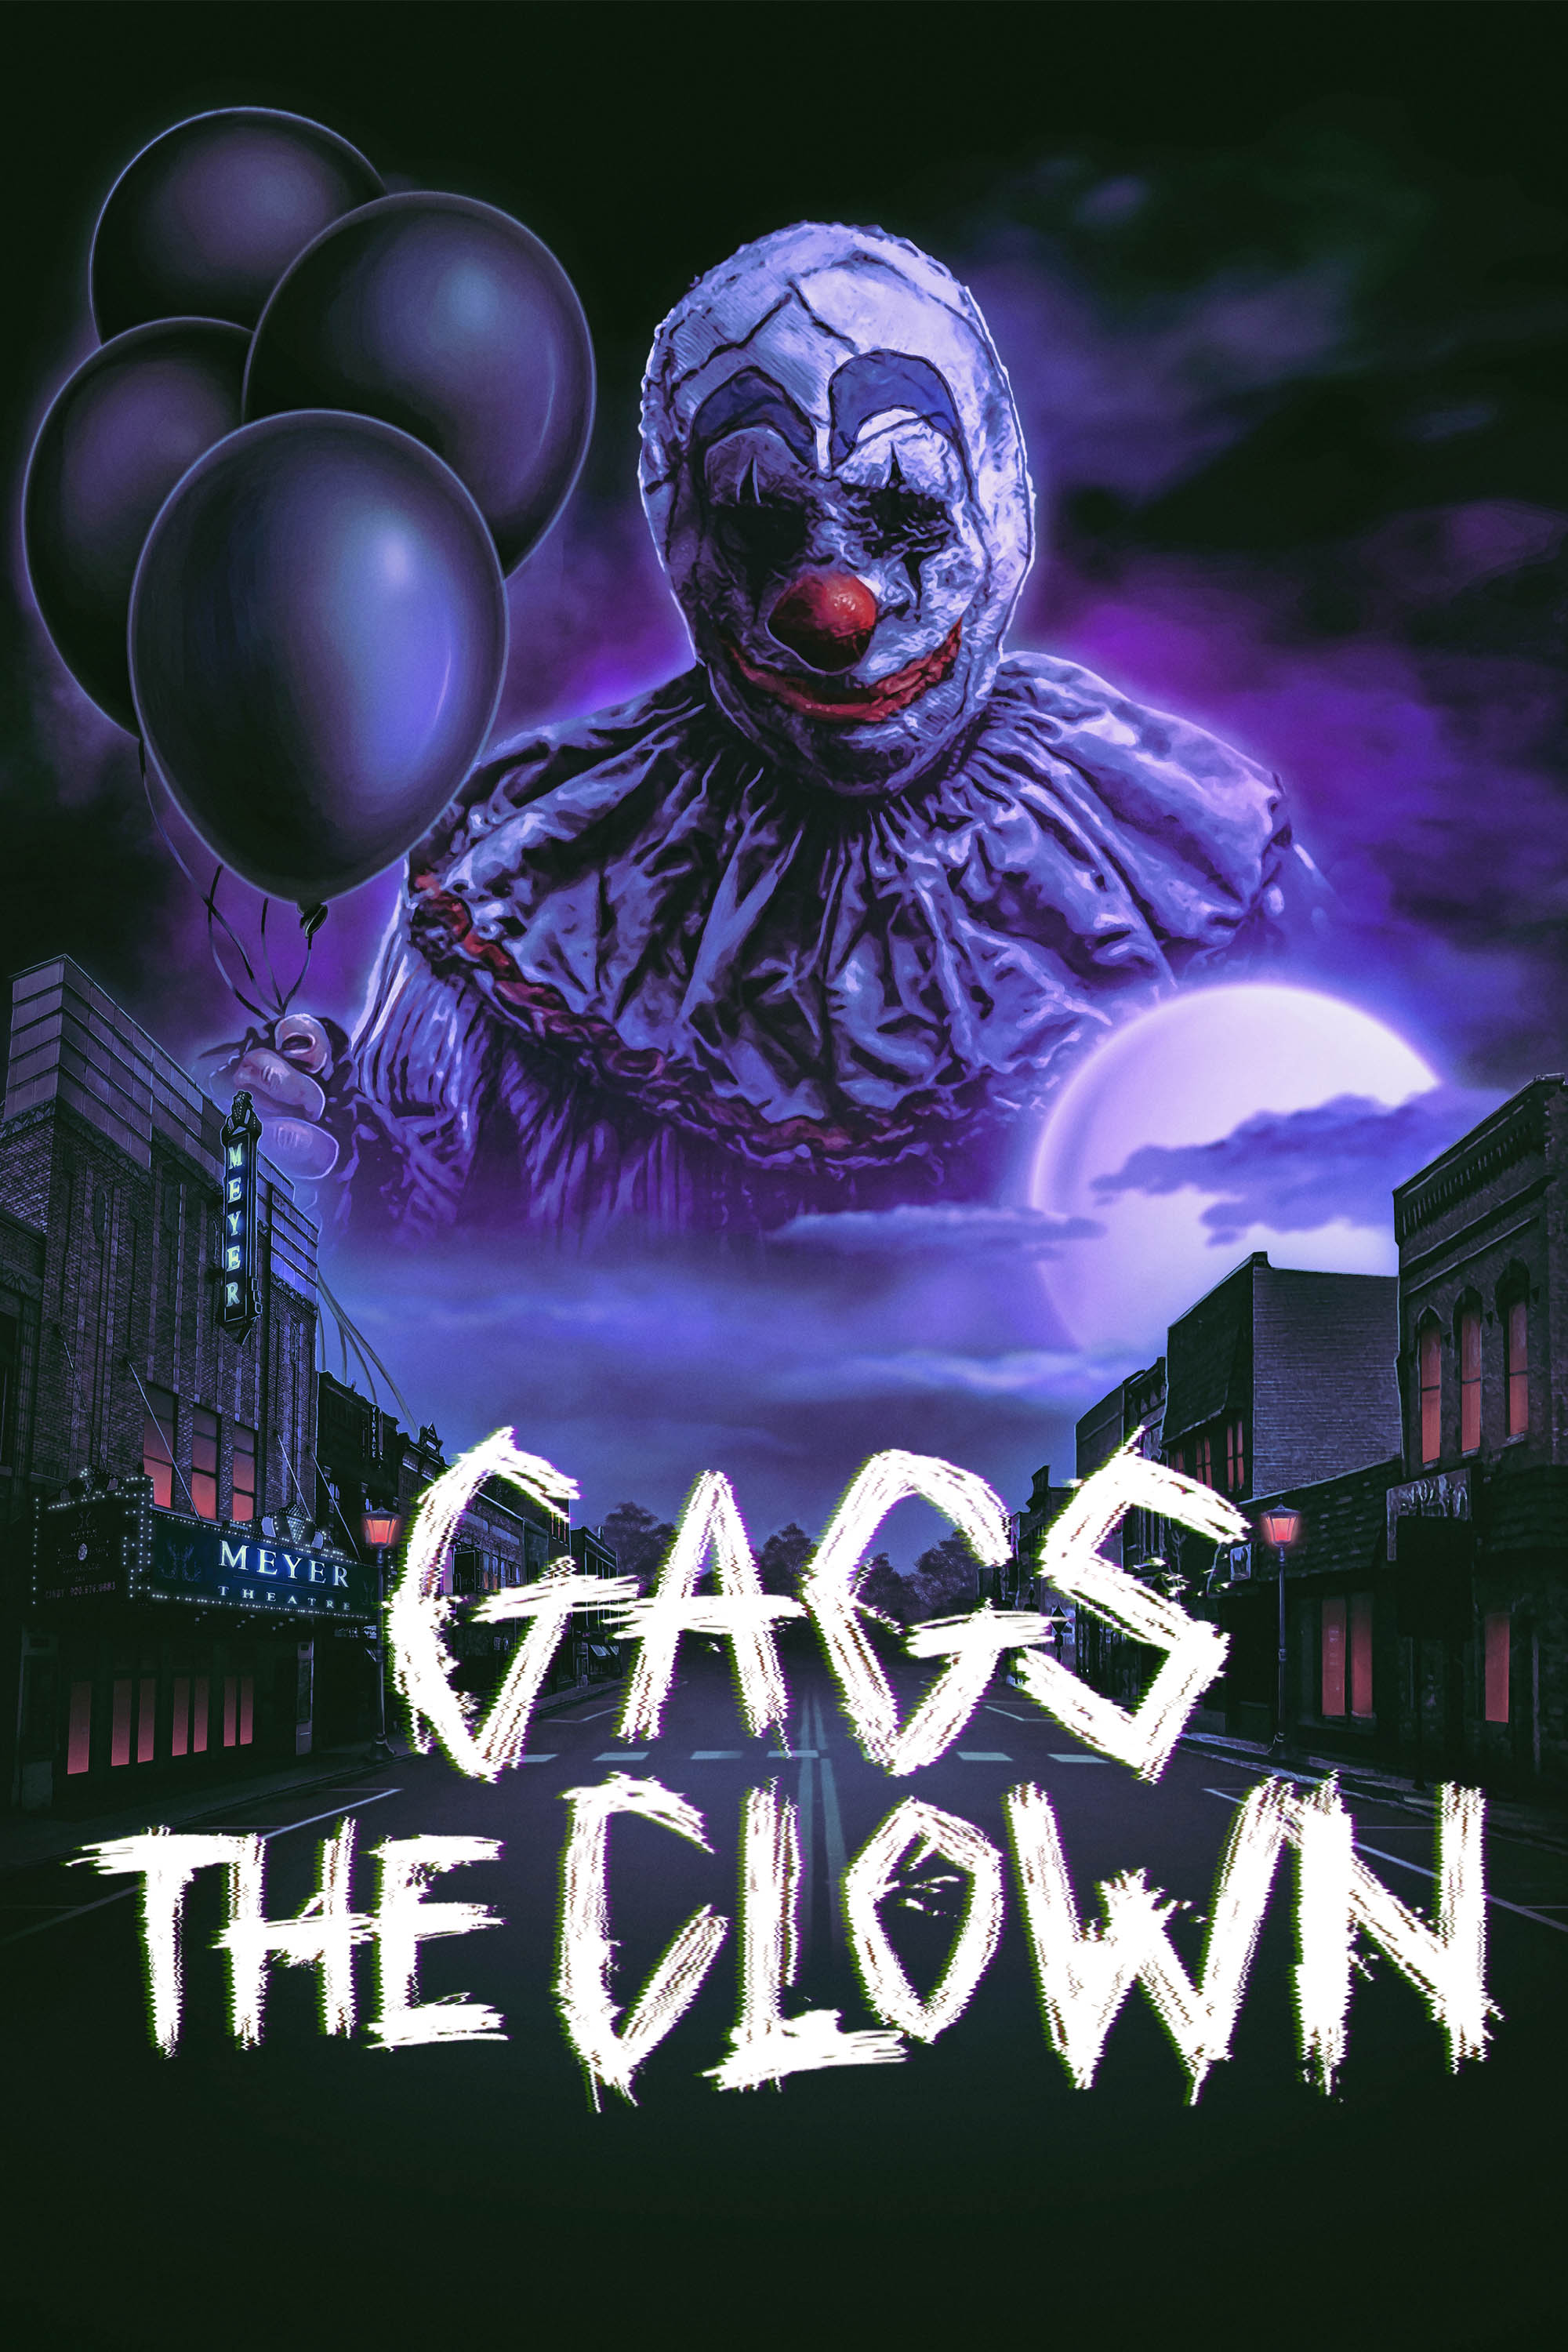 Gags The Clown